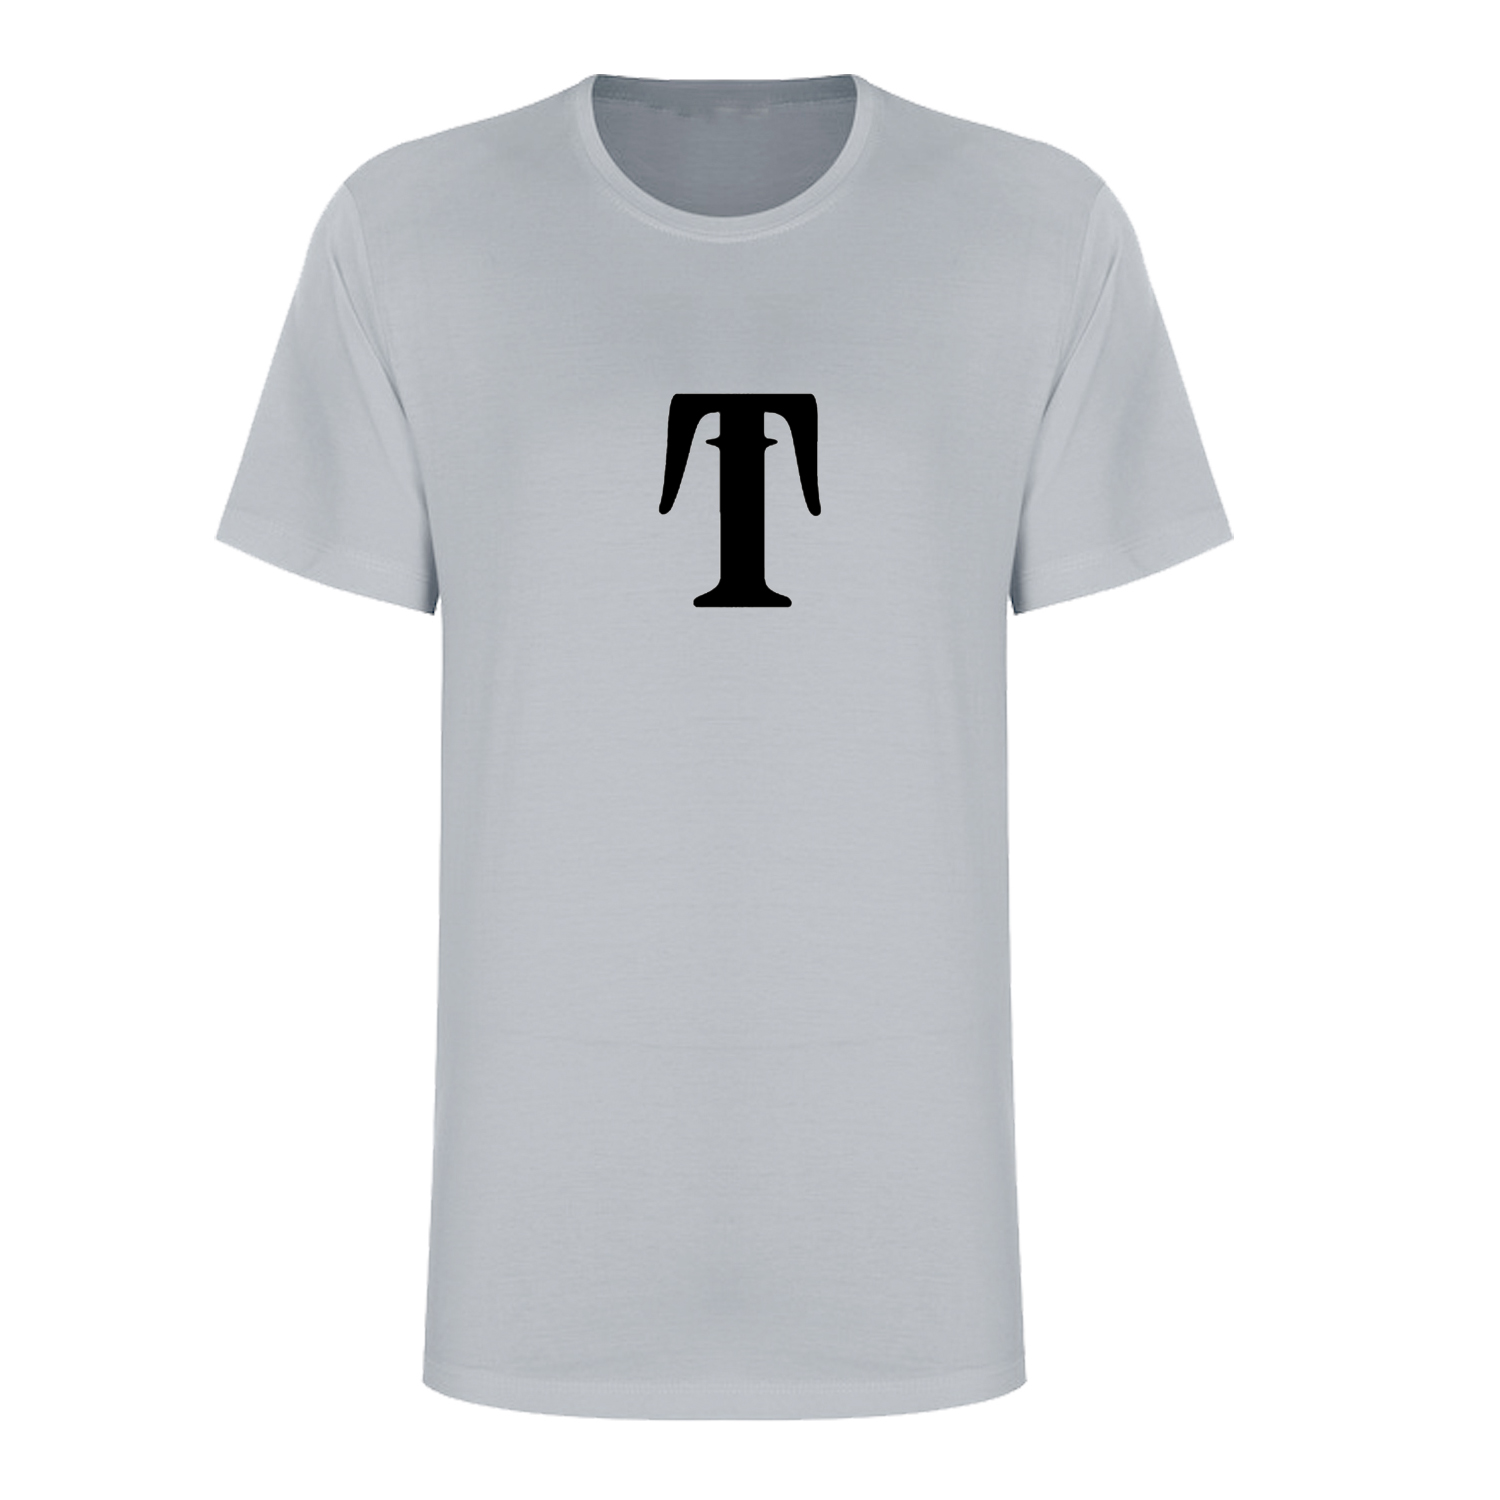 تی شرت آستین کوتاه زنانه مدل حرف T کد L255 رنگ طوسی